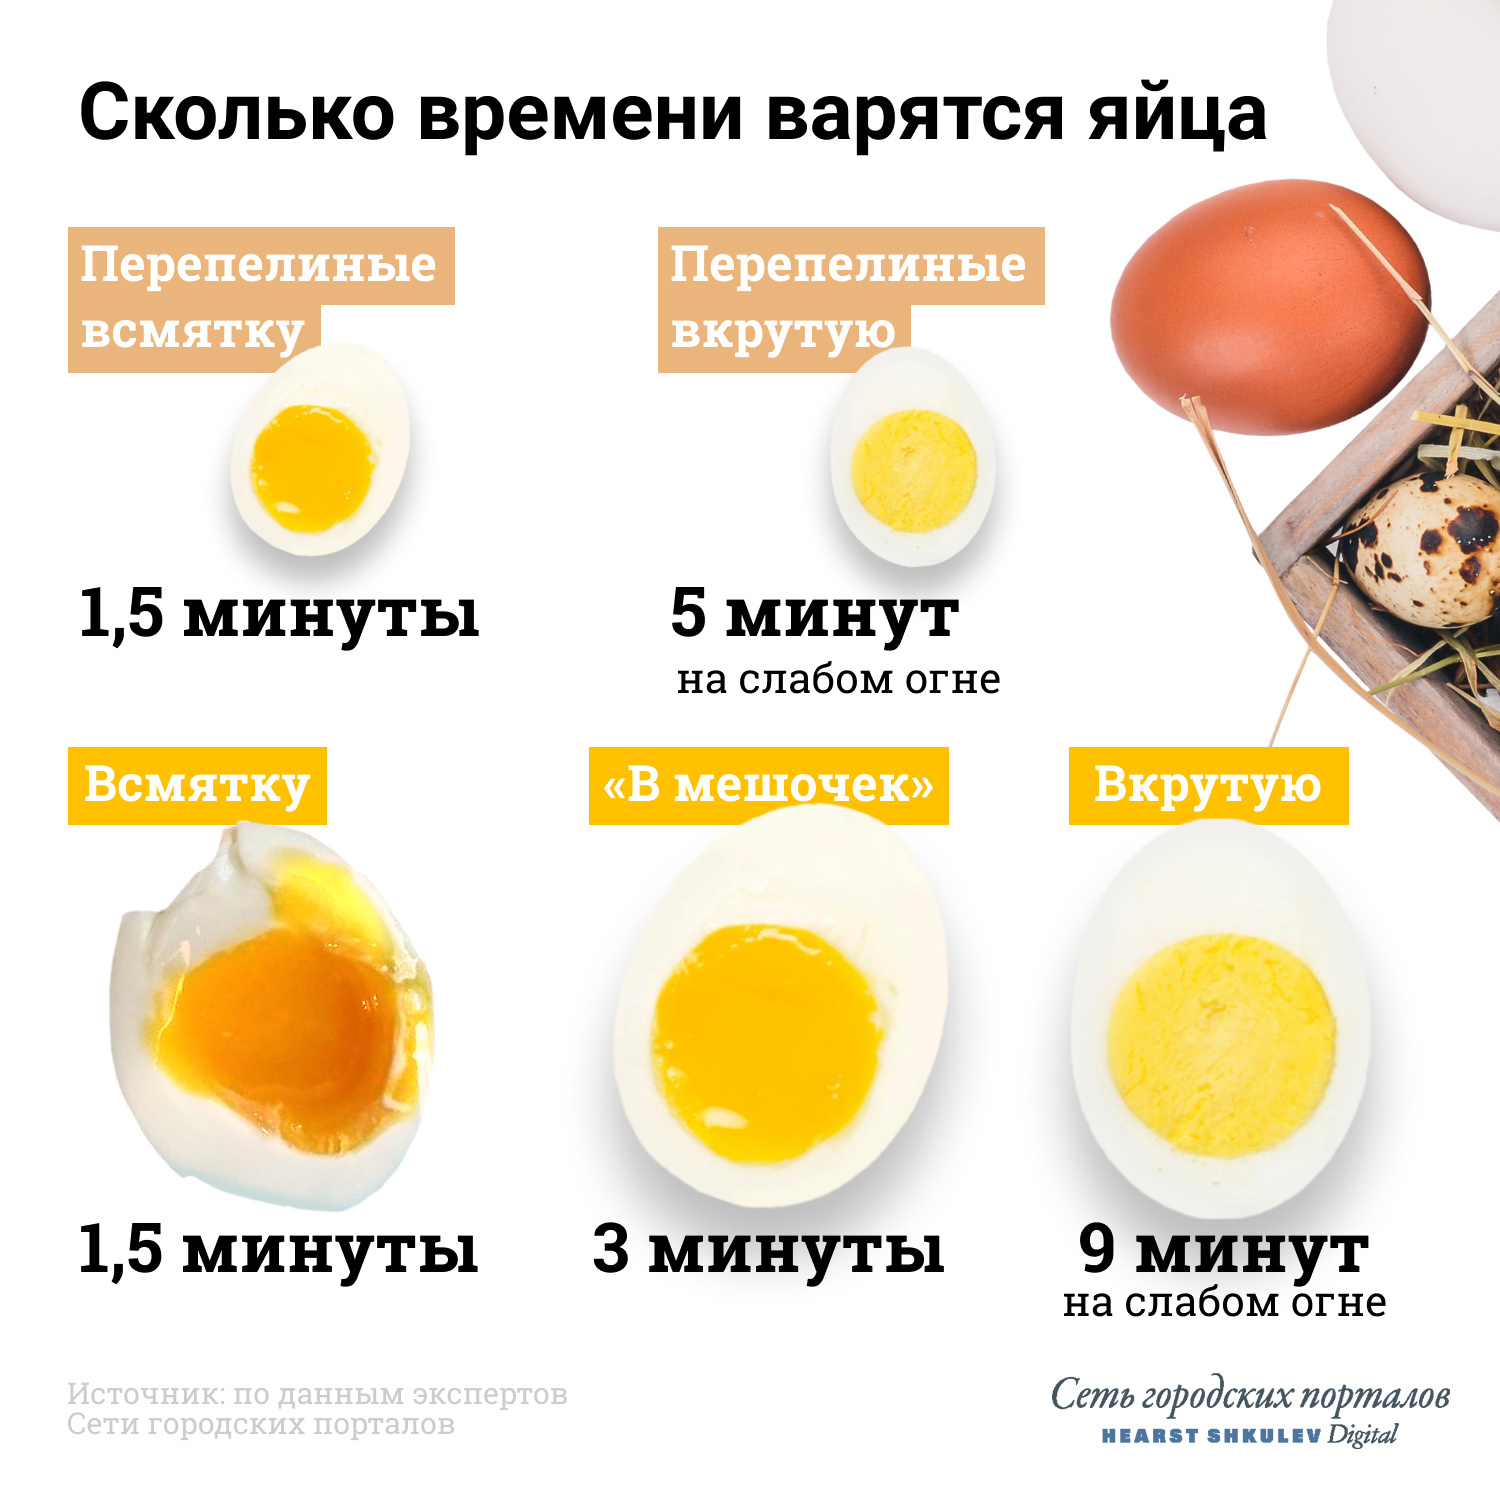 Яйца вкрутую в кипящей воде. Яйцо всмятку яйца вкрутую. Яйца всмятку в мешочек и вкрутую. Сколько варить яйца. Сколько варить яйца всмятку.